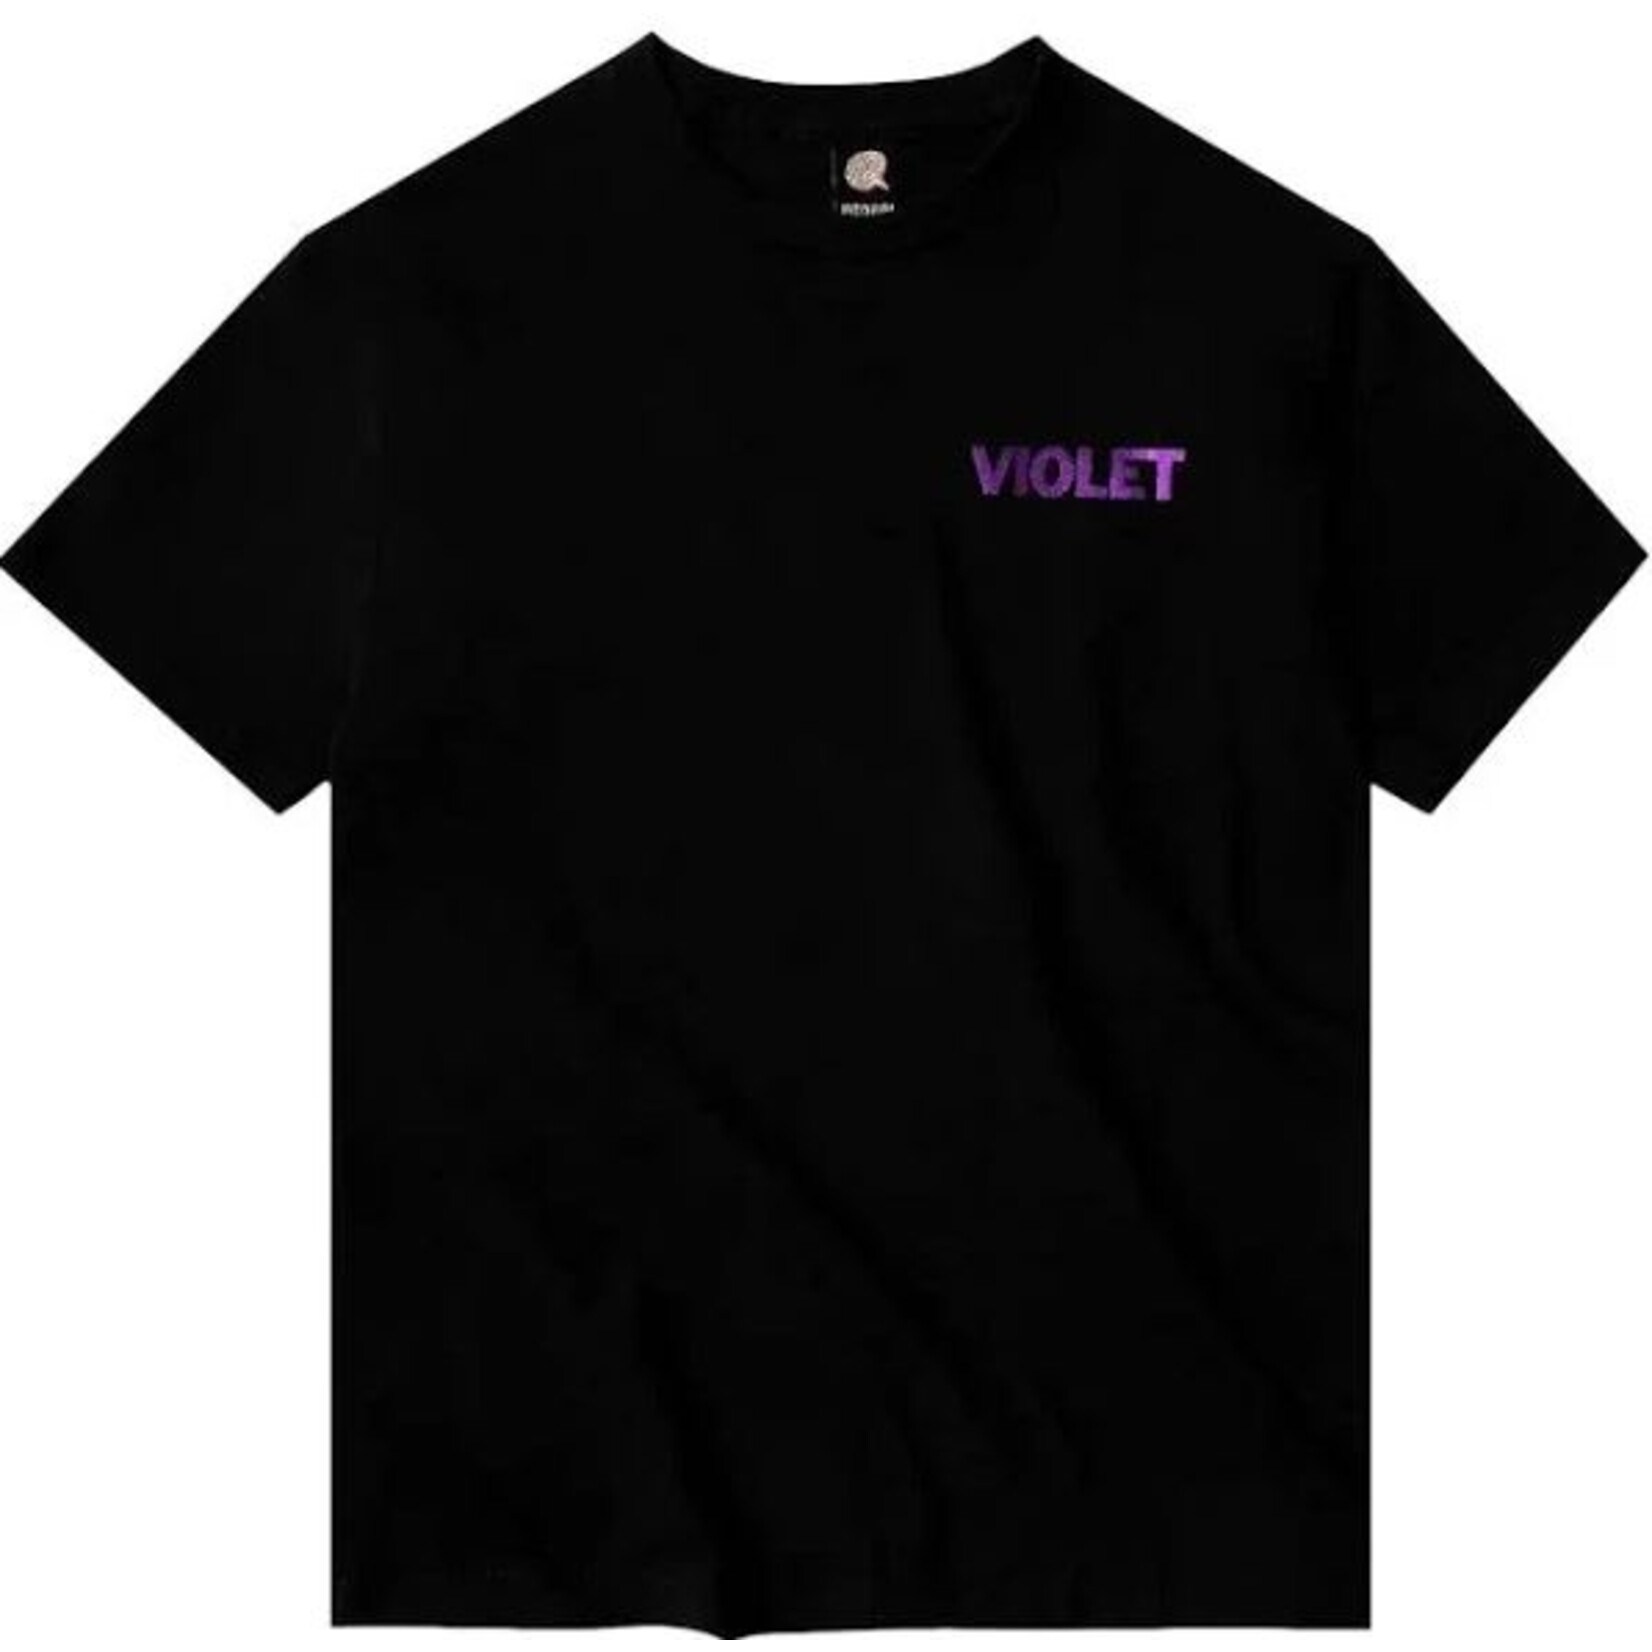 Violet Tee-Violet-Peace-BLK